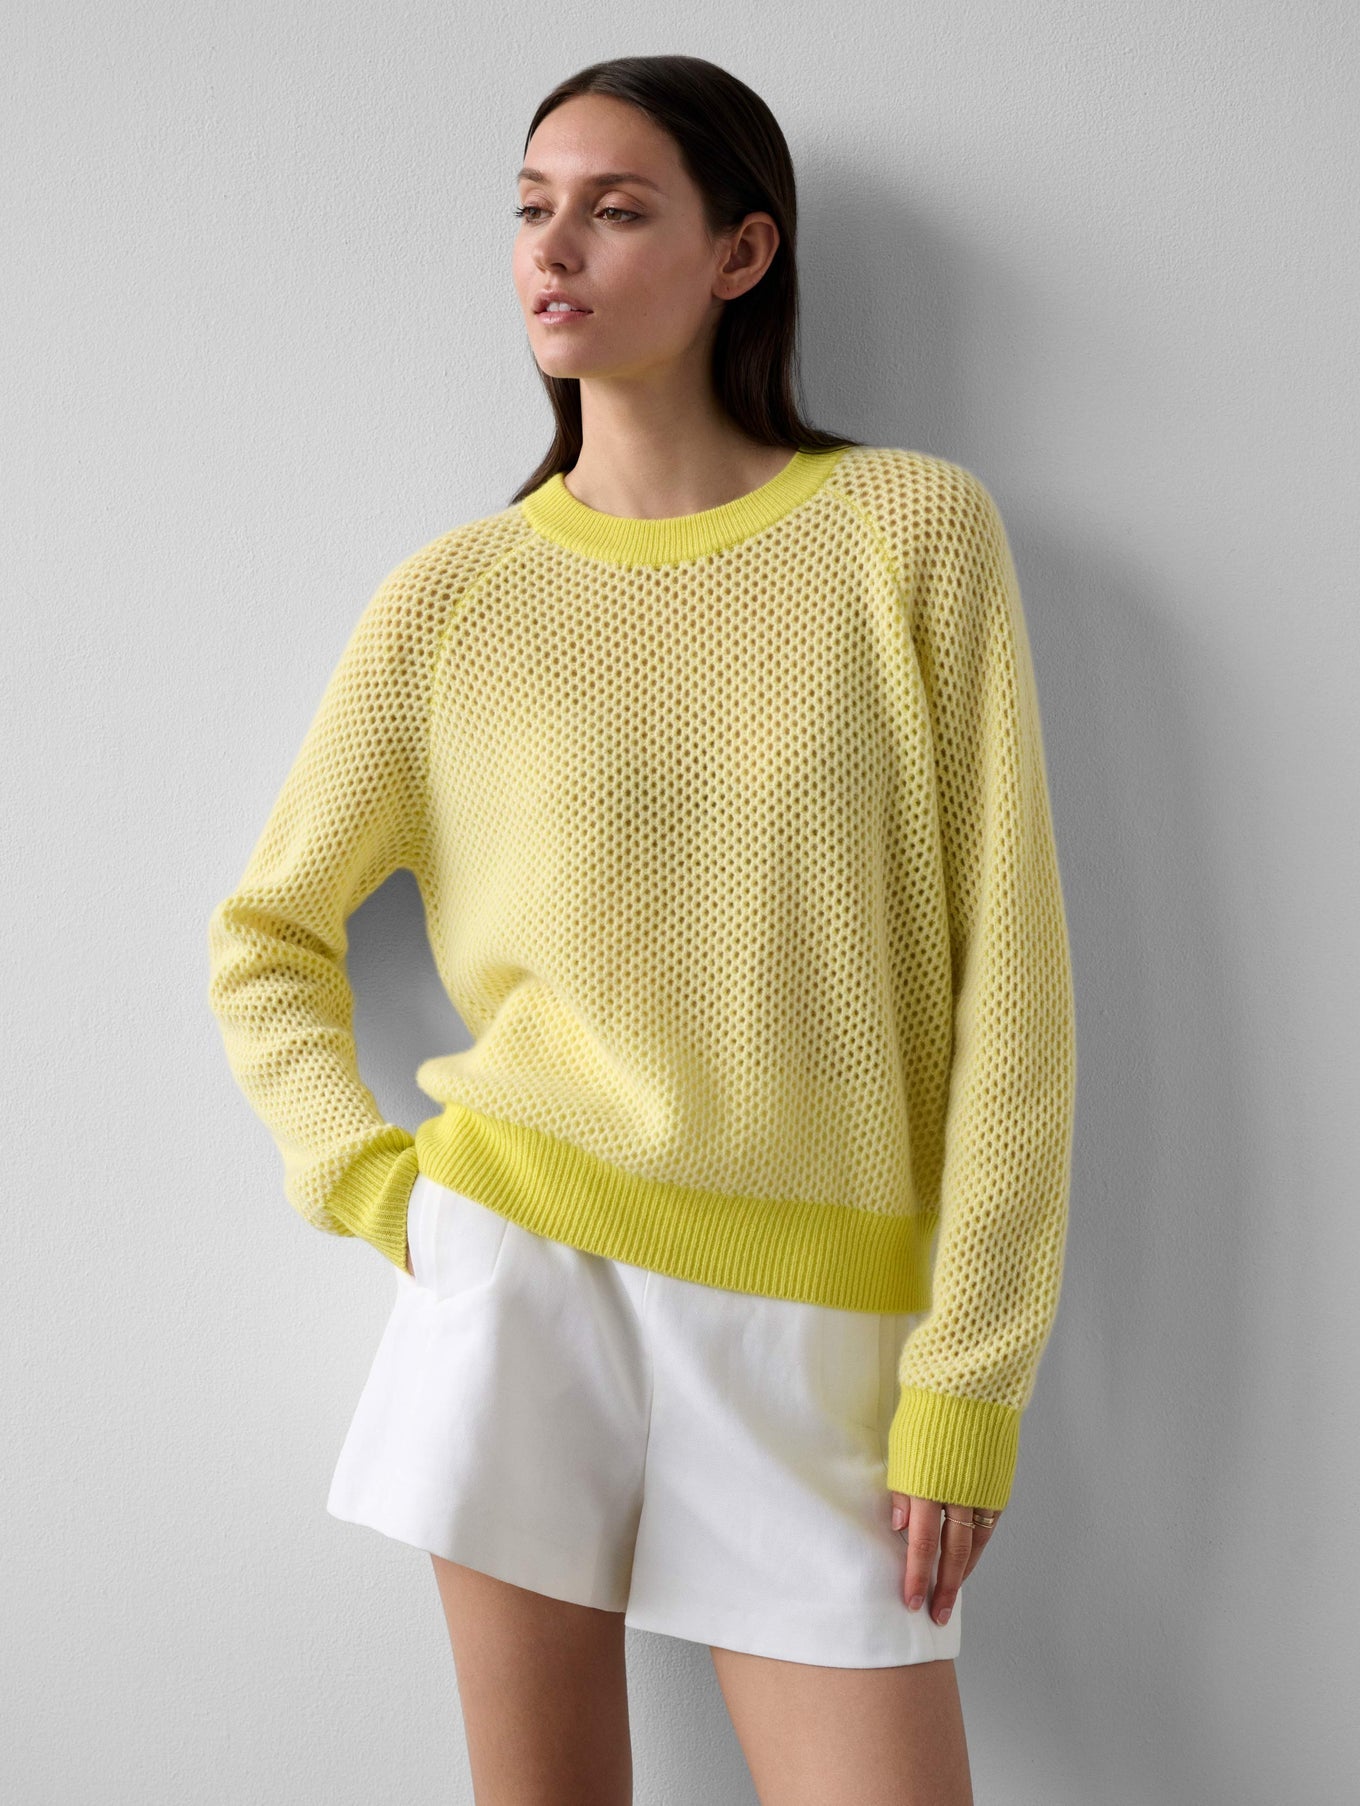 Cashmere Ramona Mesh Sweatshirt in Lemon Combo